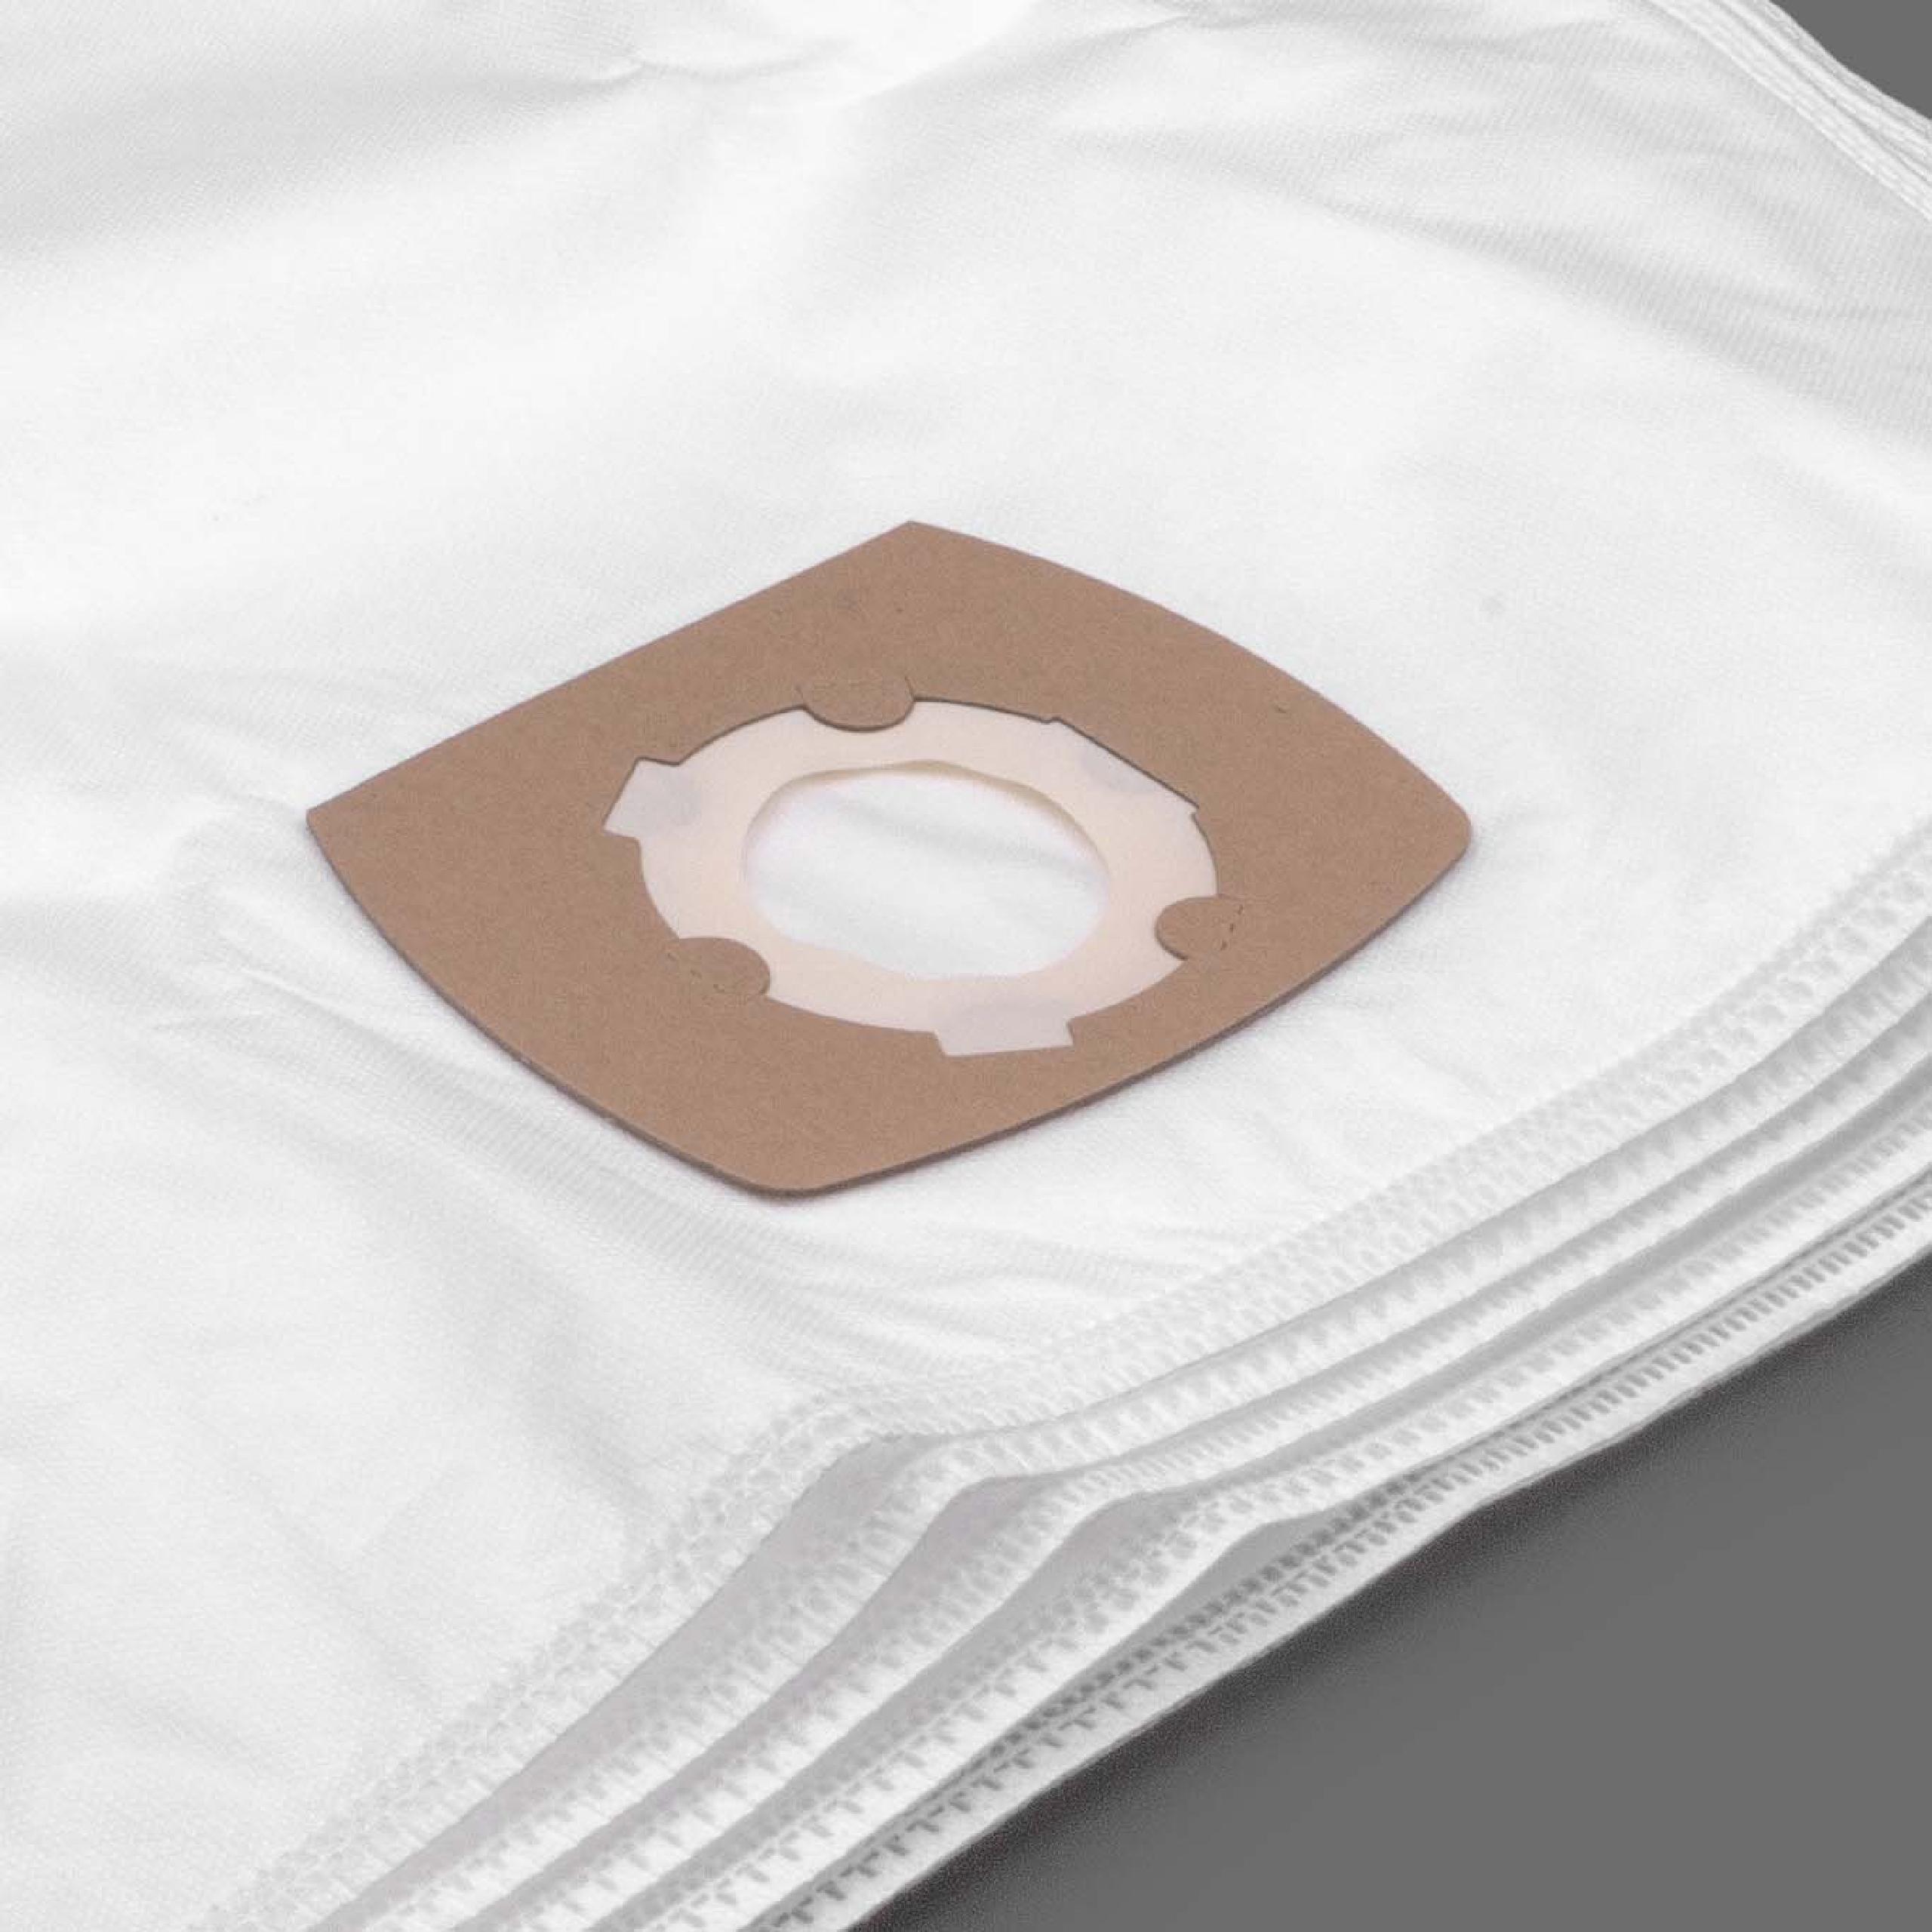 5x Staubsaugerbeutel als Ersatz für Grundig Typ G - Hygiene Bag für Satrap Staubsauger u.a. - Mikrovlies